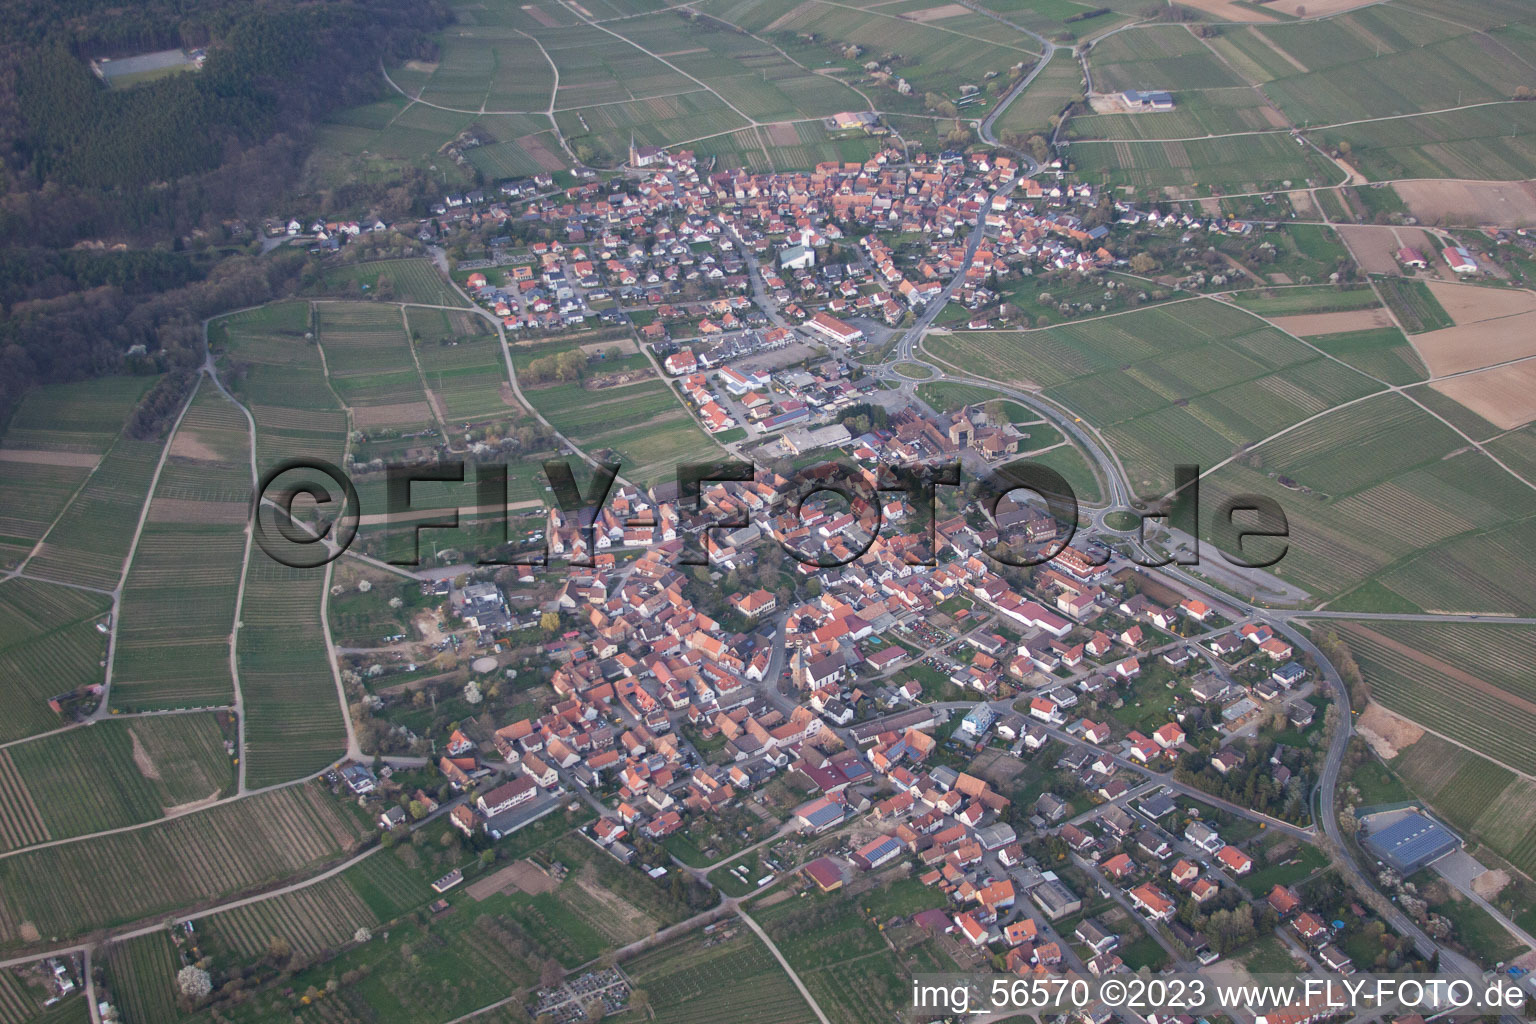 District Schweigen in Schweigen-Rechtenbach in the state Rhineland-Palatinate, Germany from the plane